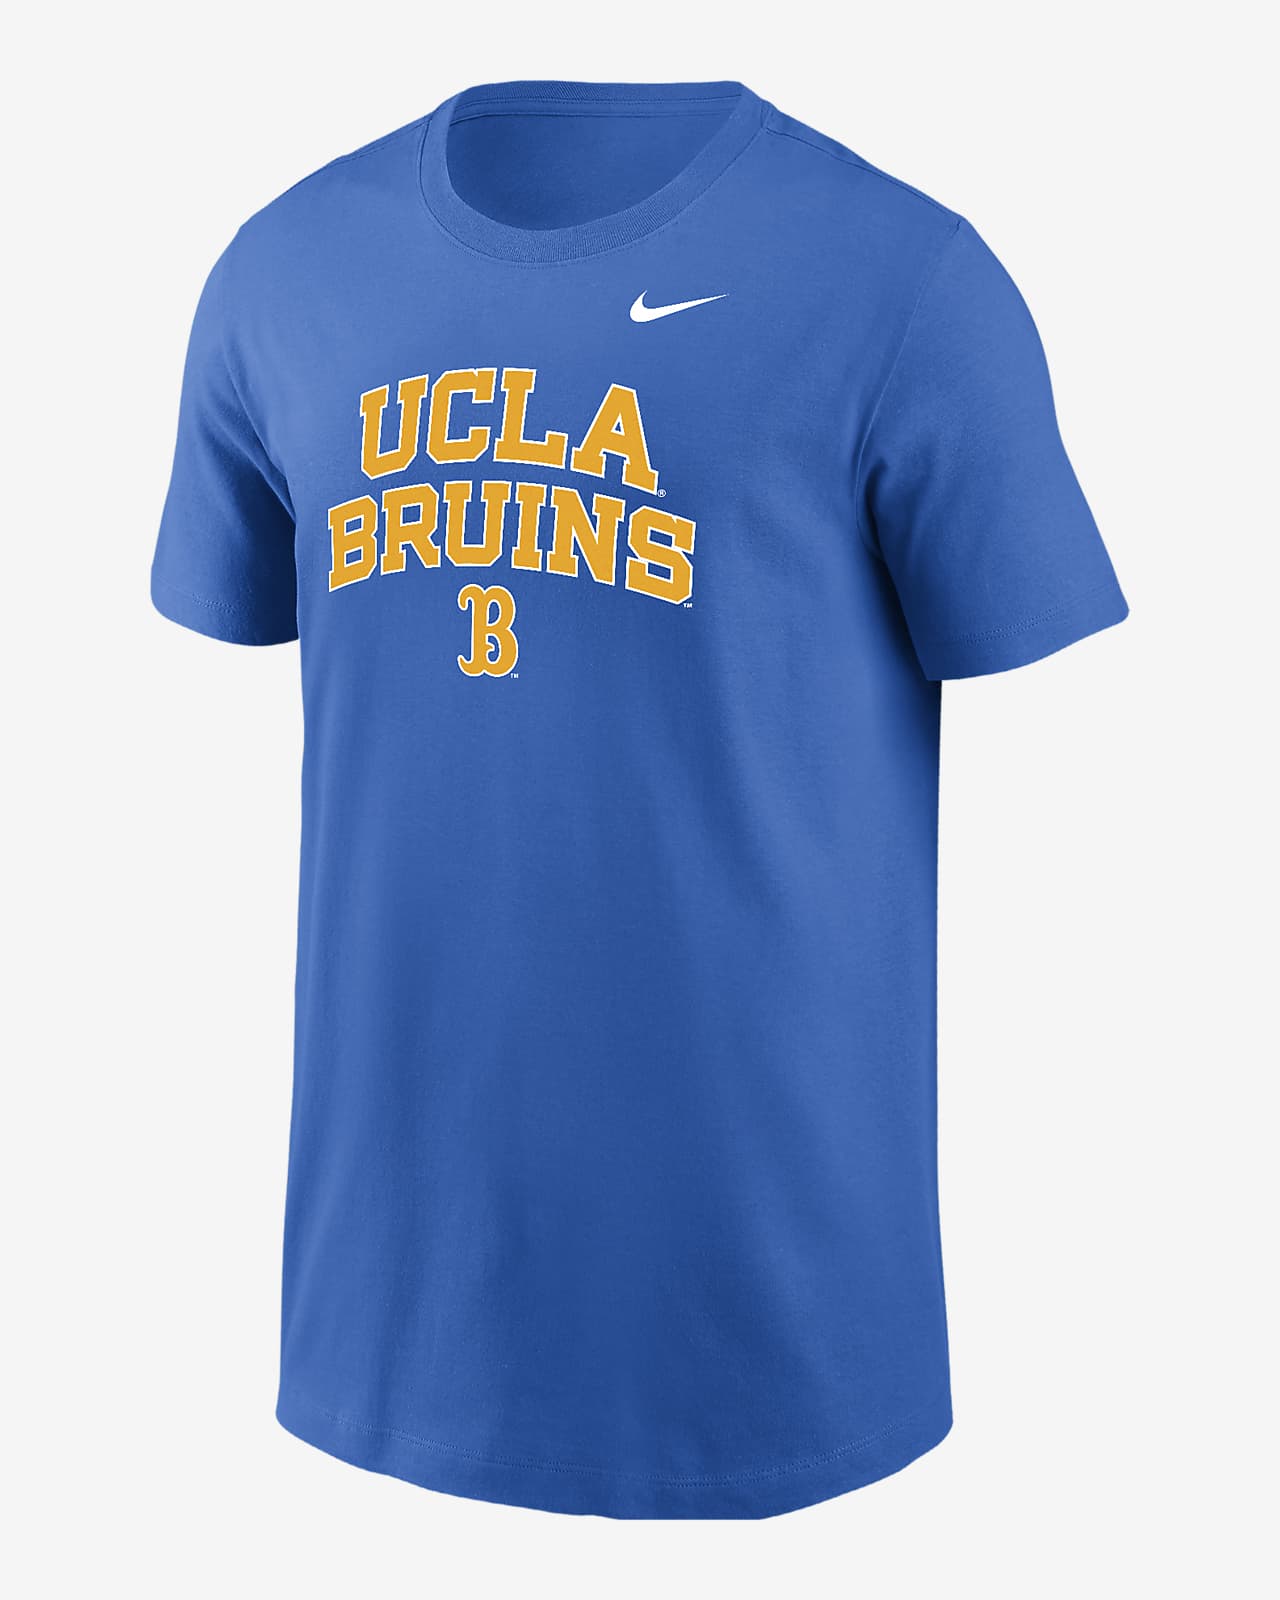 Playera universitaria Nike para niño talla grande UCLA